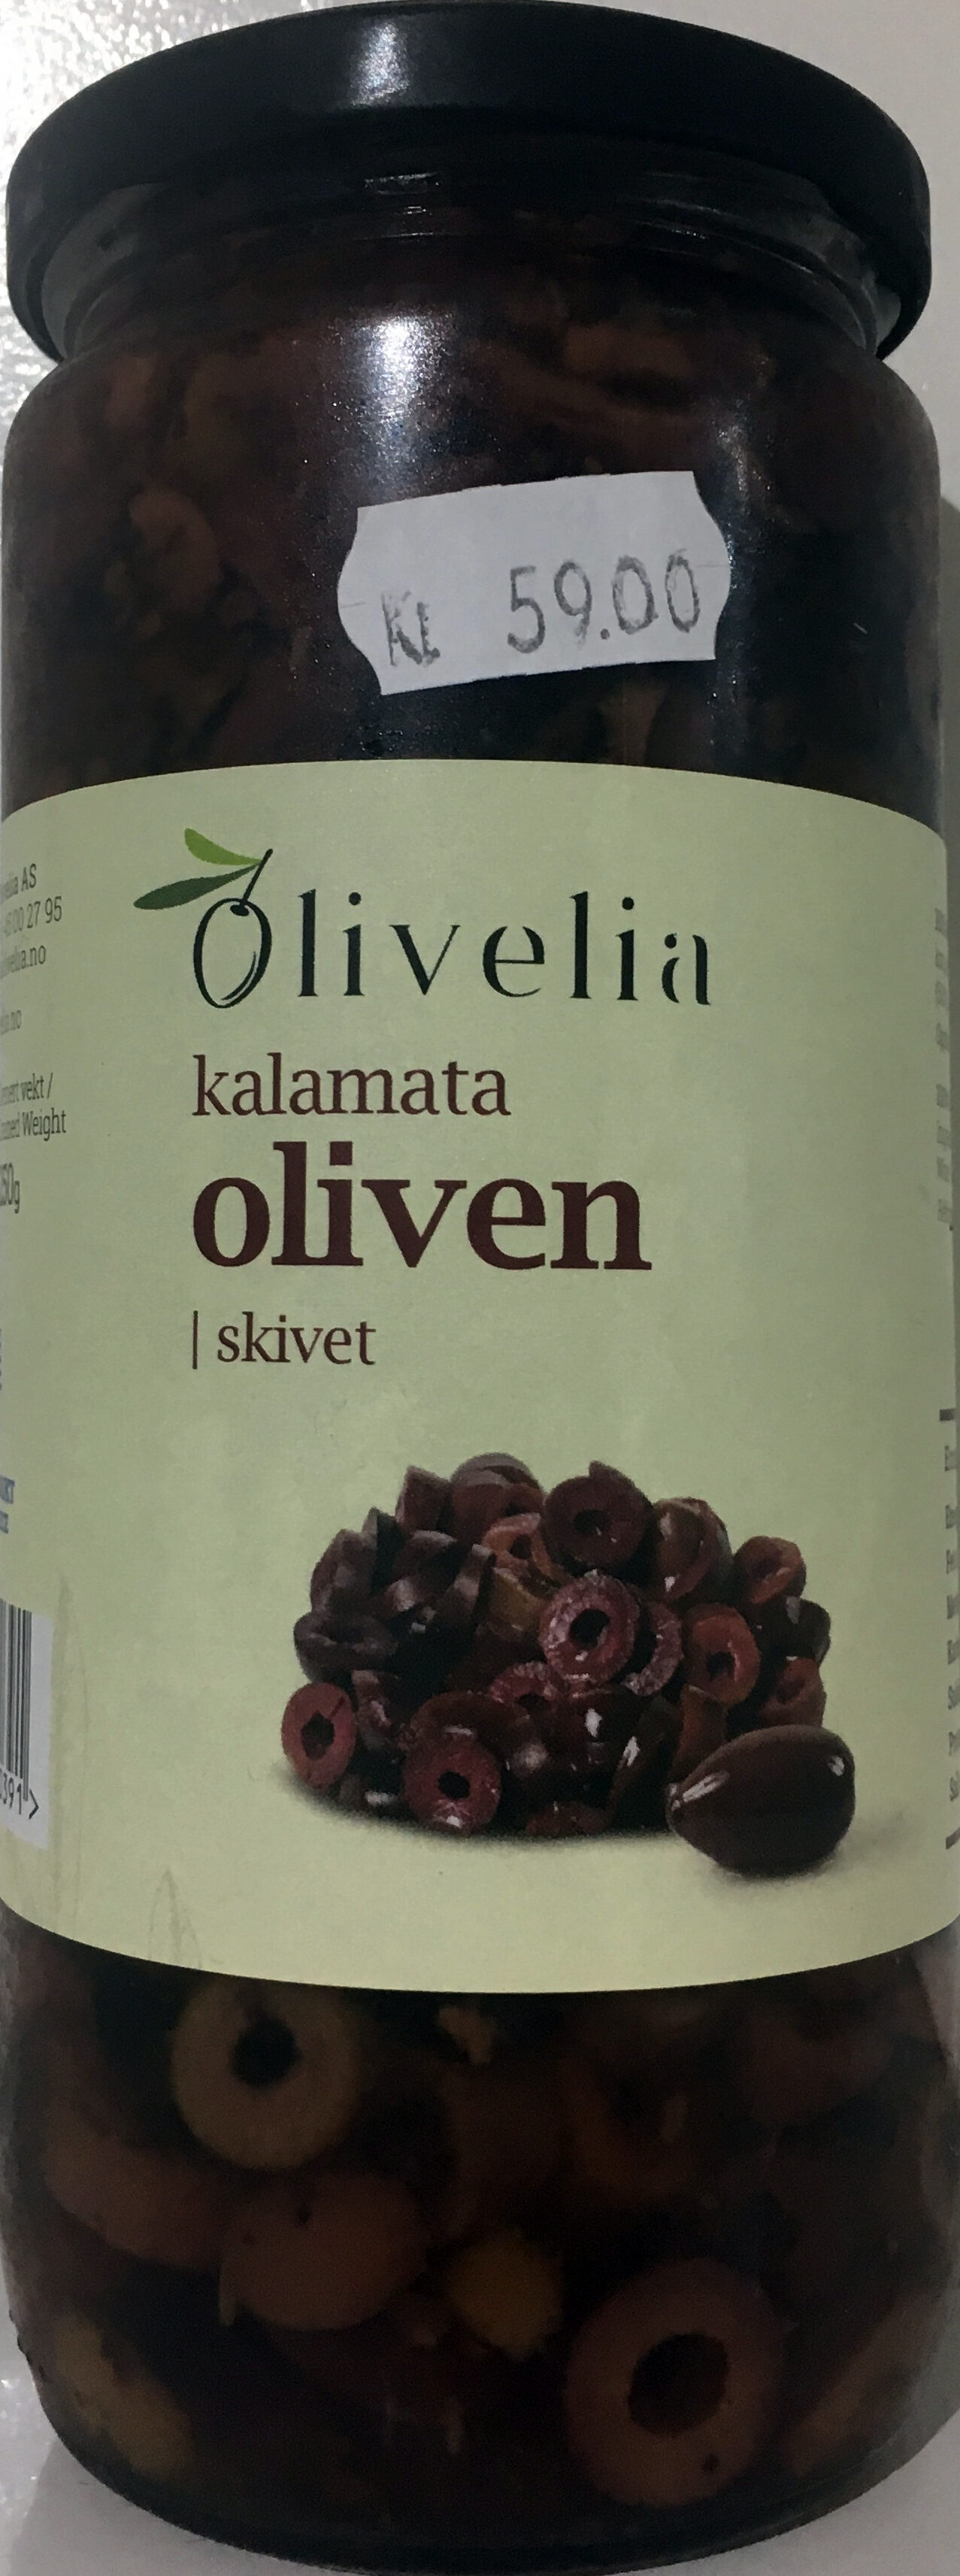 Kalamata Oliven - skivet - Produkt